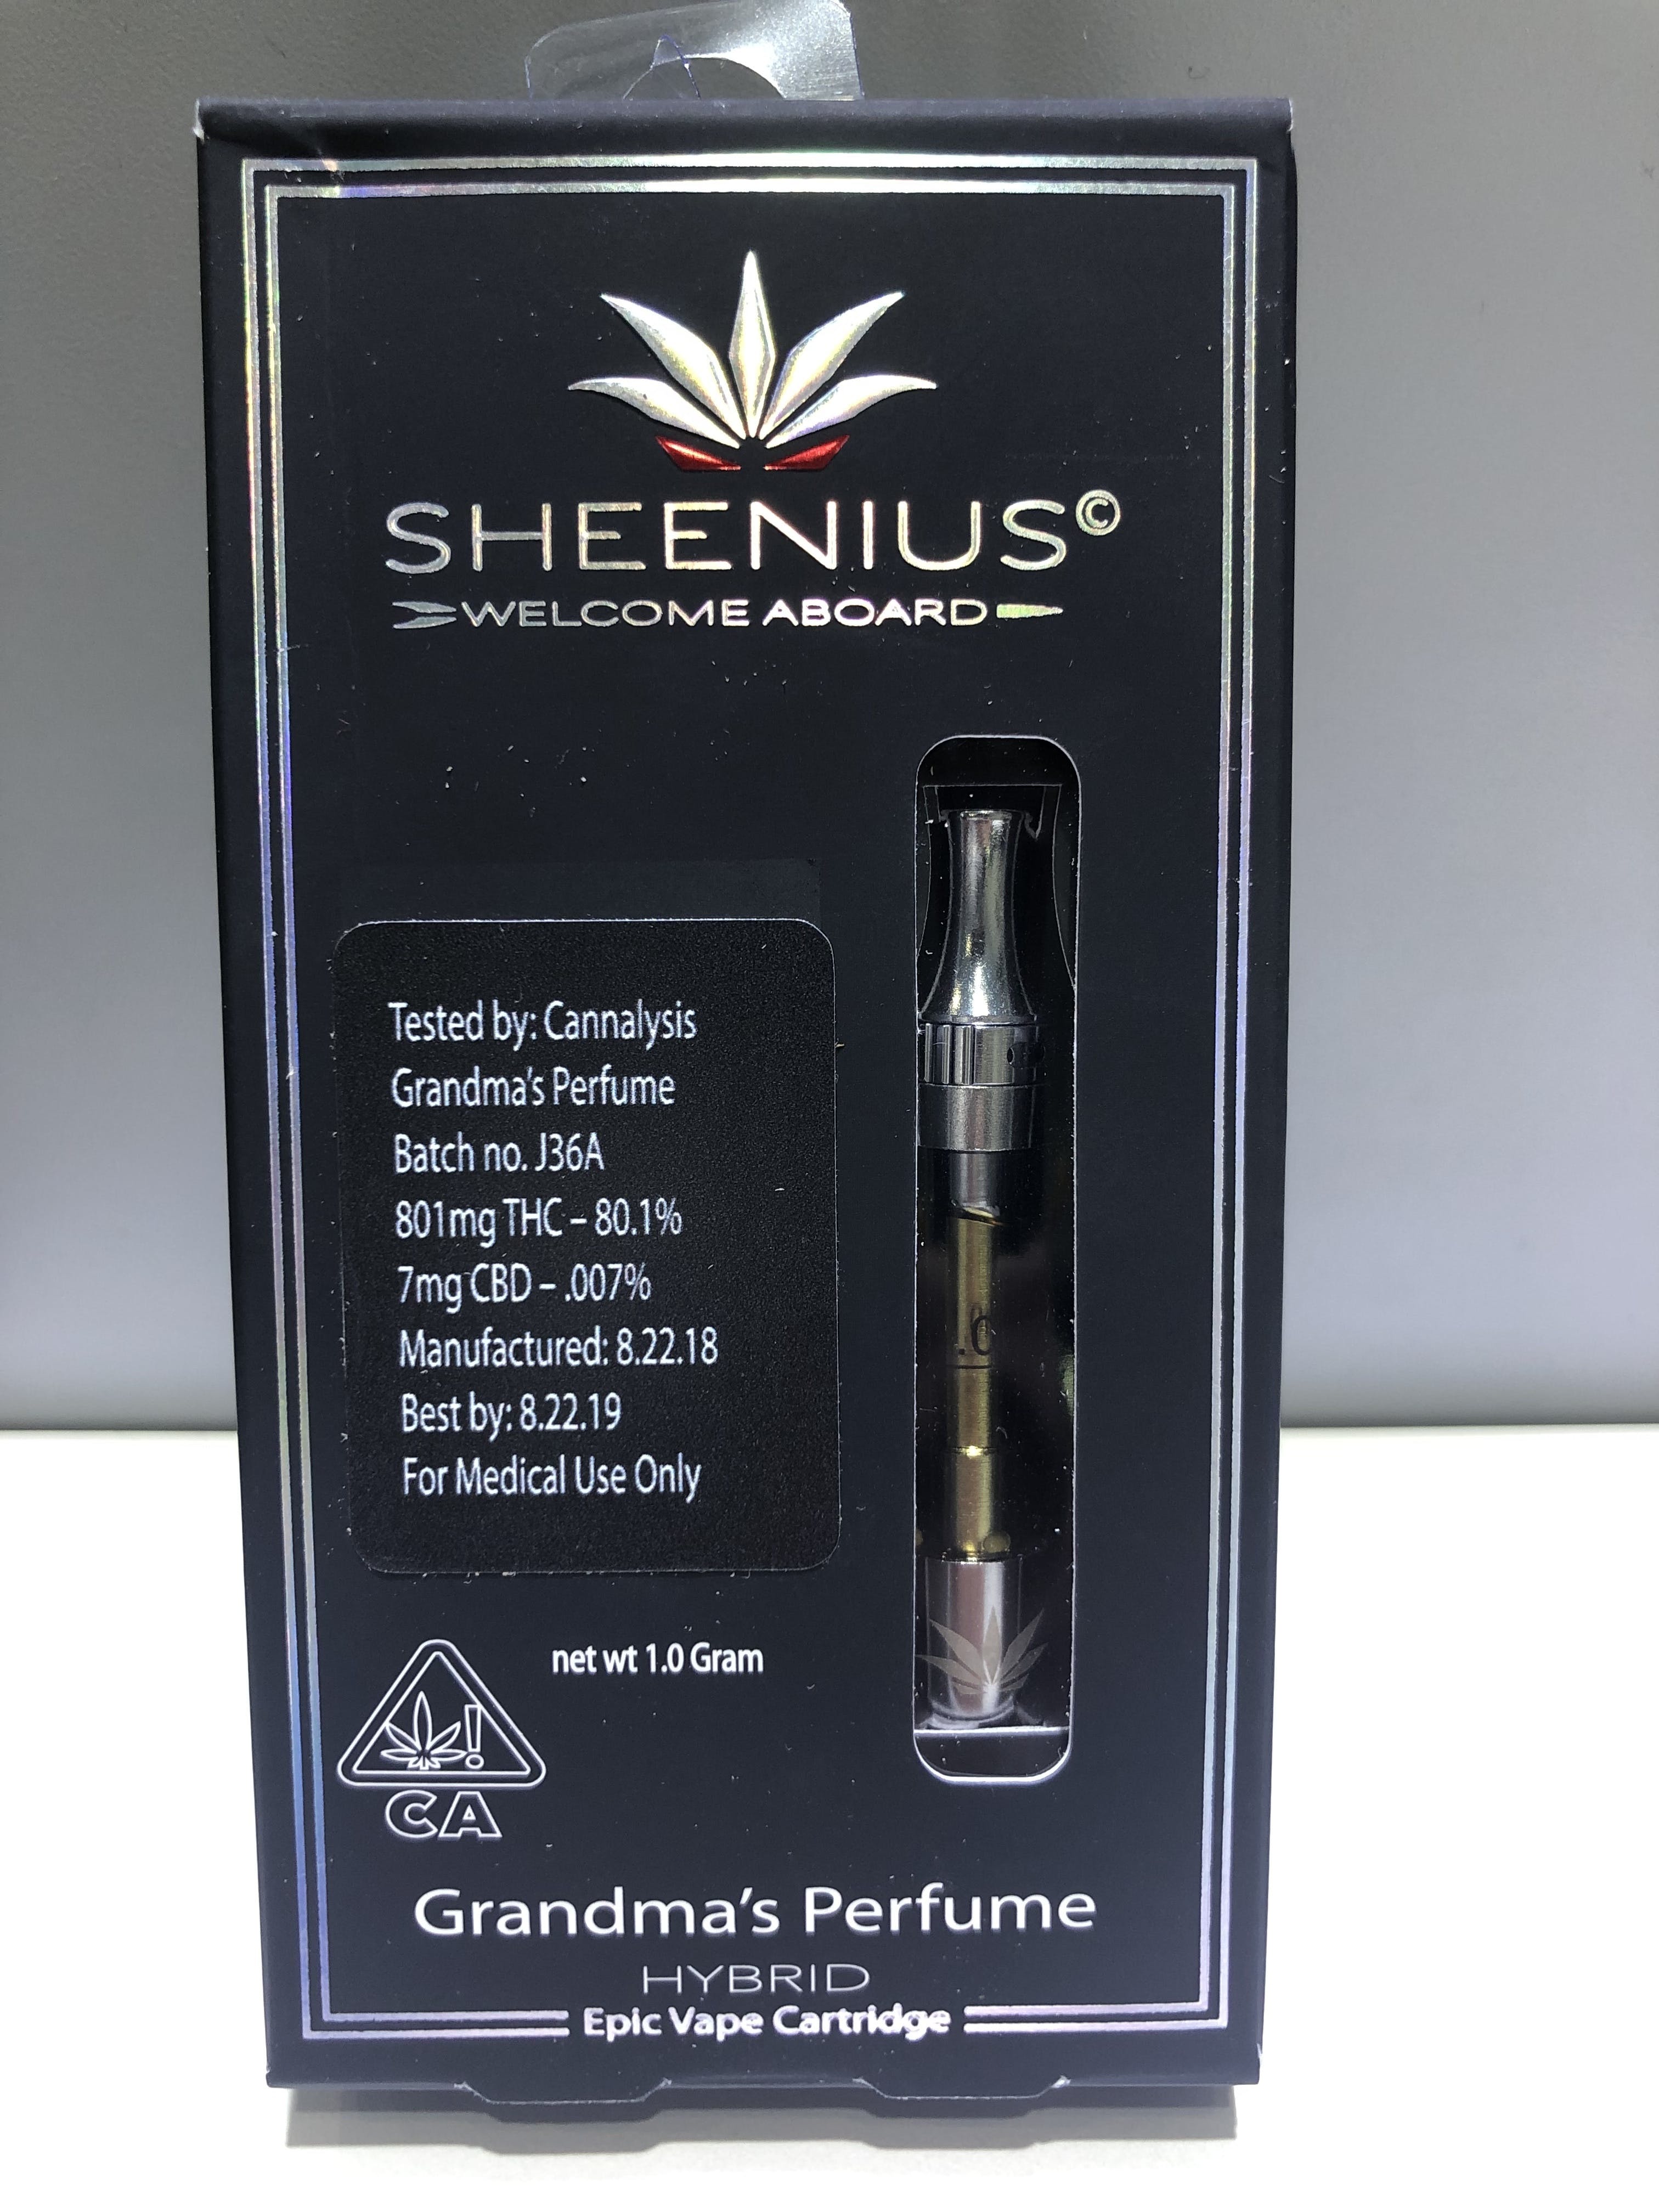 marijuana-dispensaries-5815-maywood-ave-maywood-sheenius-cartridge-grandmas-perfume